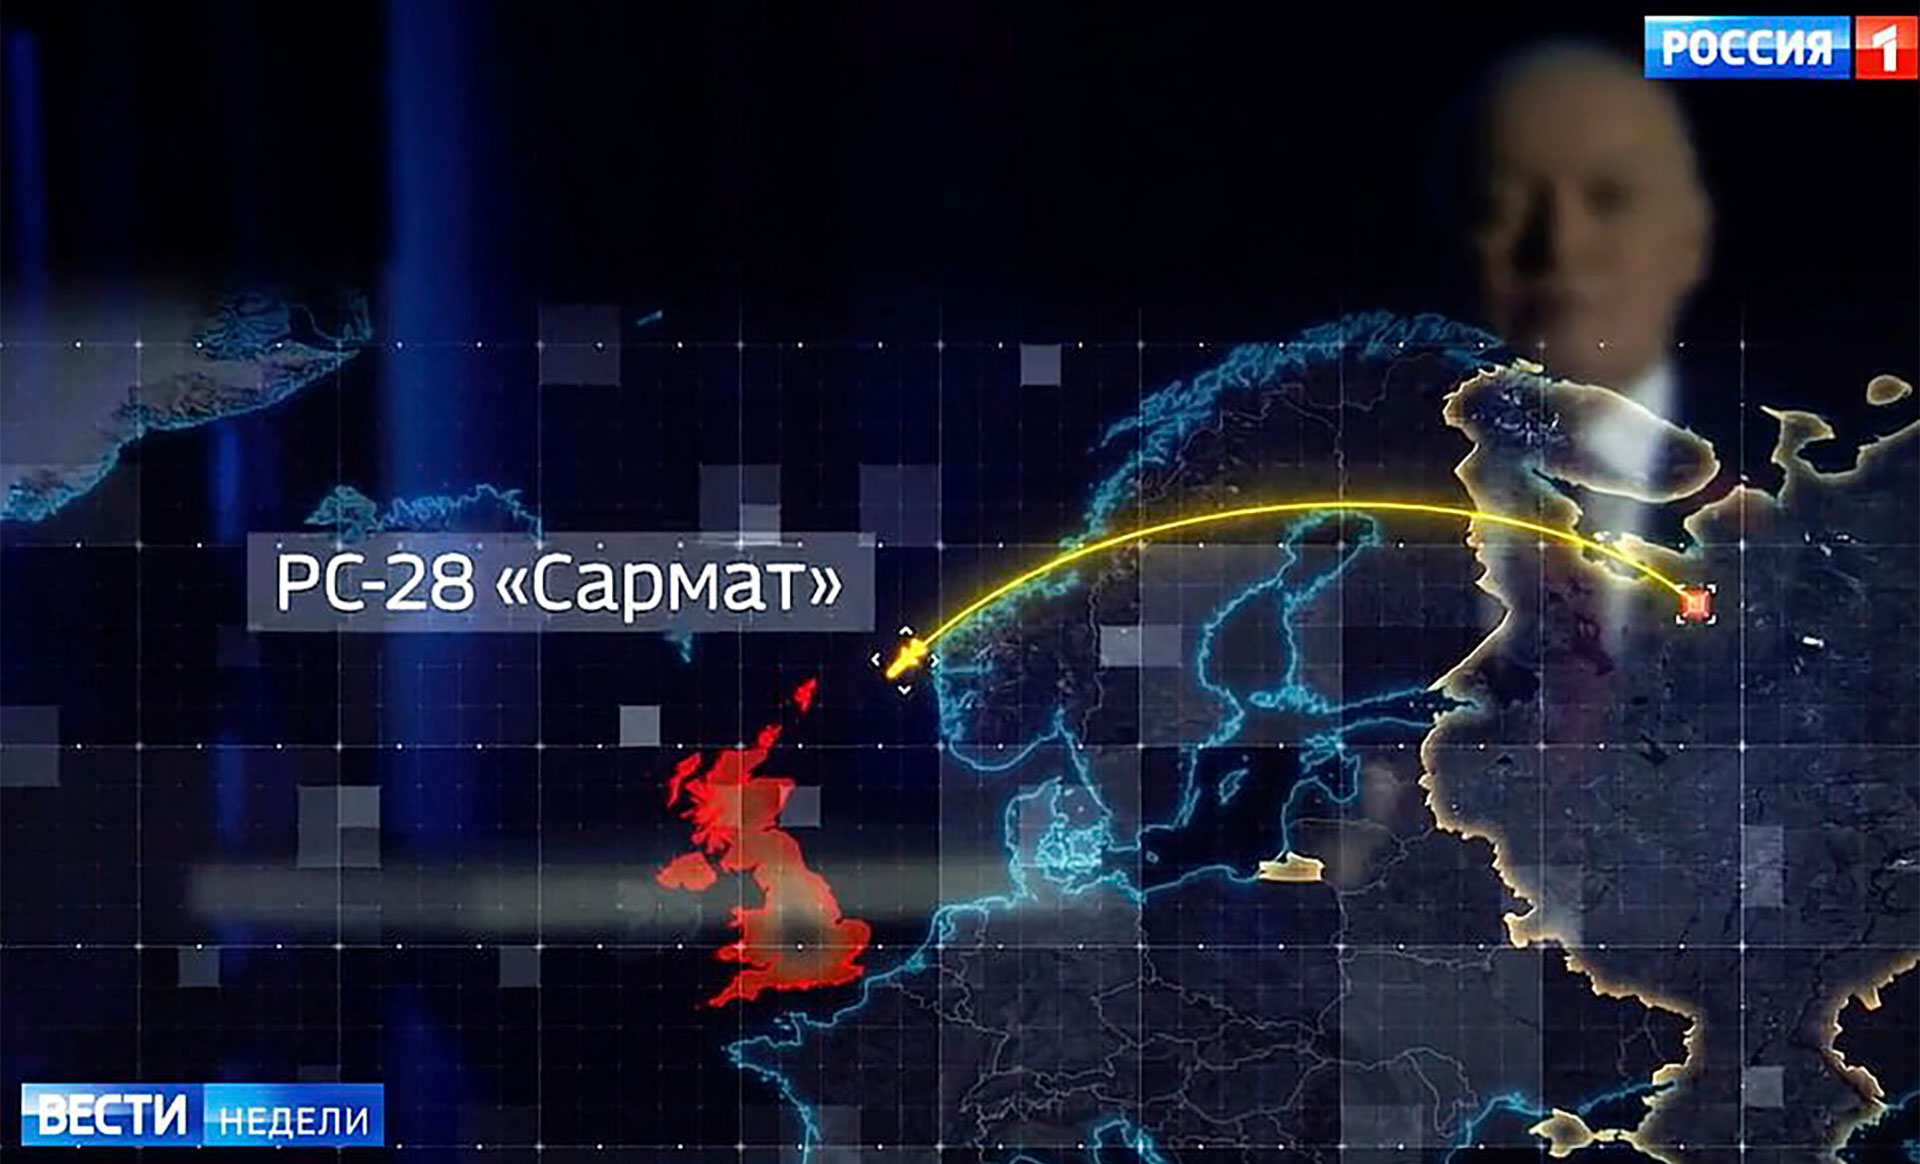 La televisión estatal rusa mostró la rapidez con la que el misil nuclear Satan-2 de Putin podría alcanzar las costas británicas